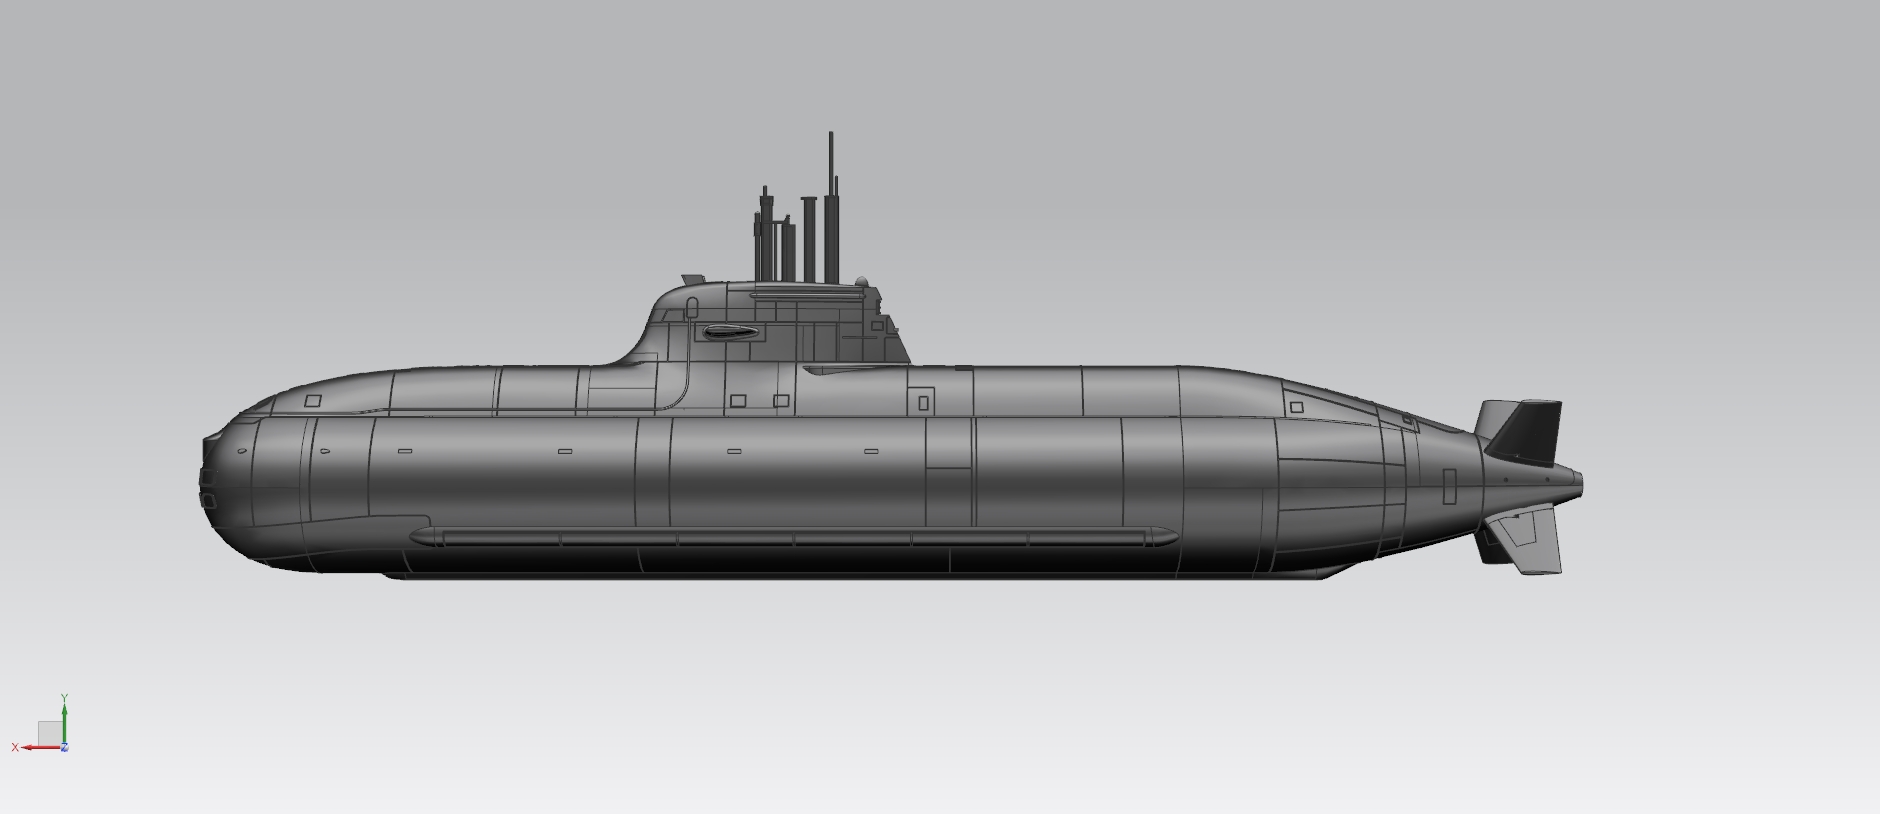 一叶 1/72太模模型 753mm遥控潜艇 SLA树脂套材 德国 212型潜艇